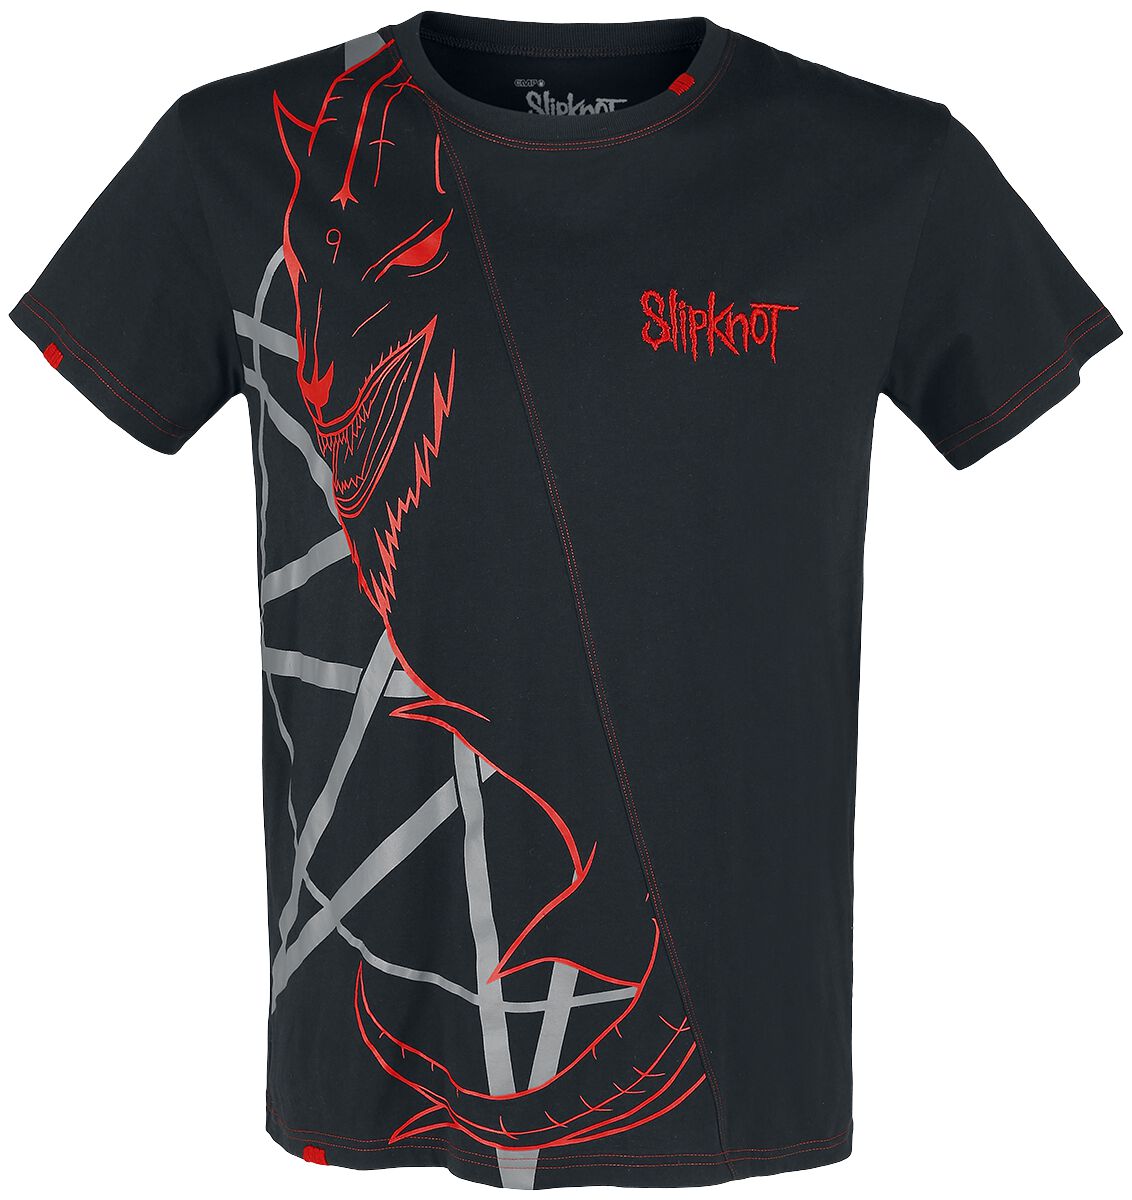 Slipknot T-Shirt - EMP Signature Collection - S bis 5XL - für Männer - Größe 4XL - schwarz/rot  - EMP exklusives Merchandise! von Slipknot